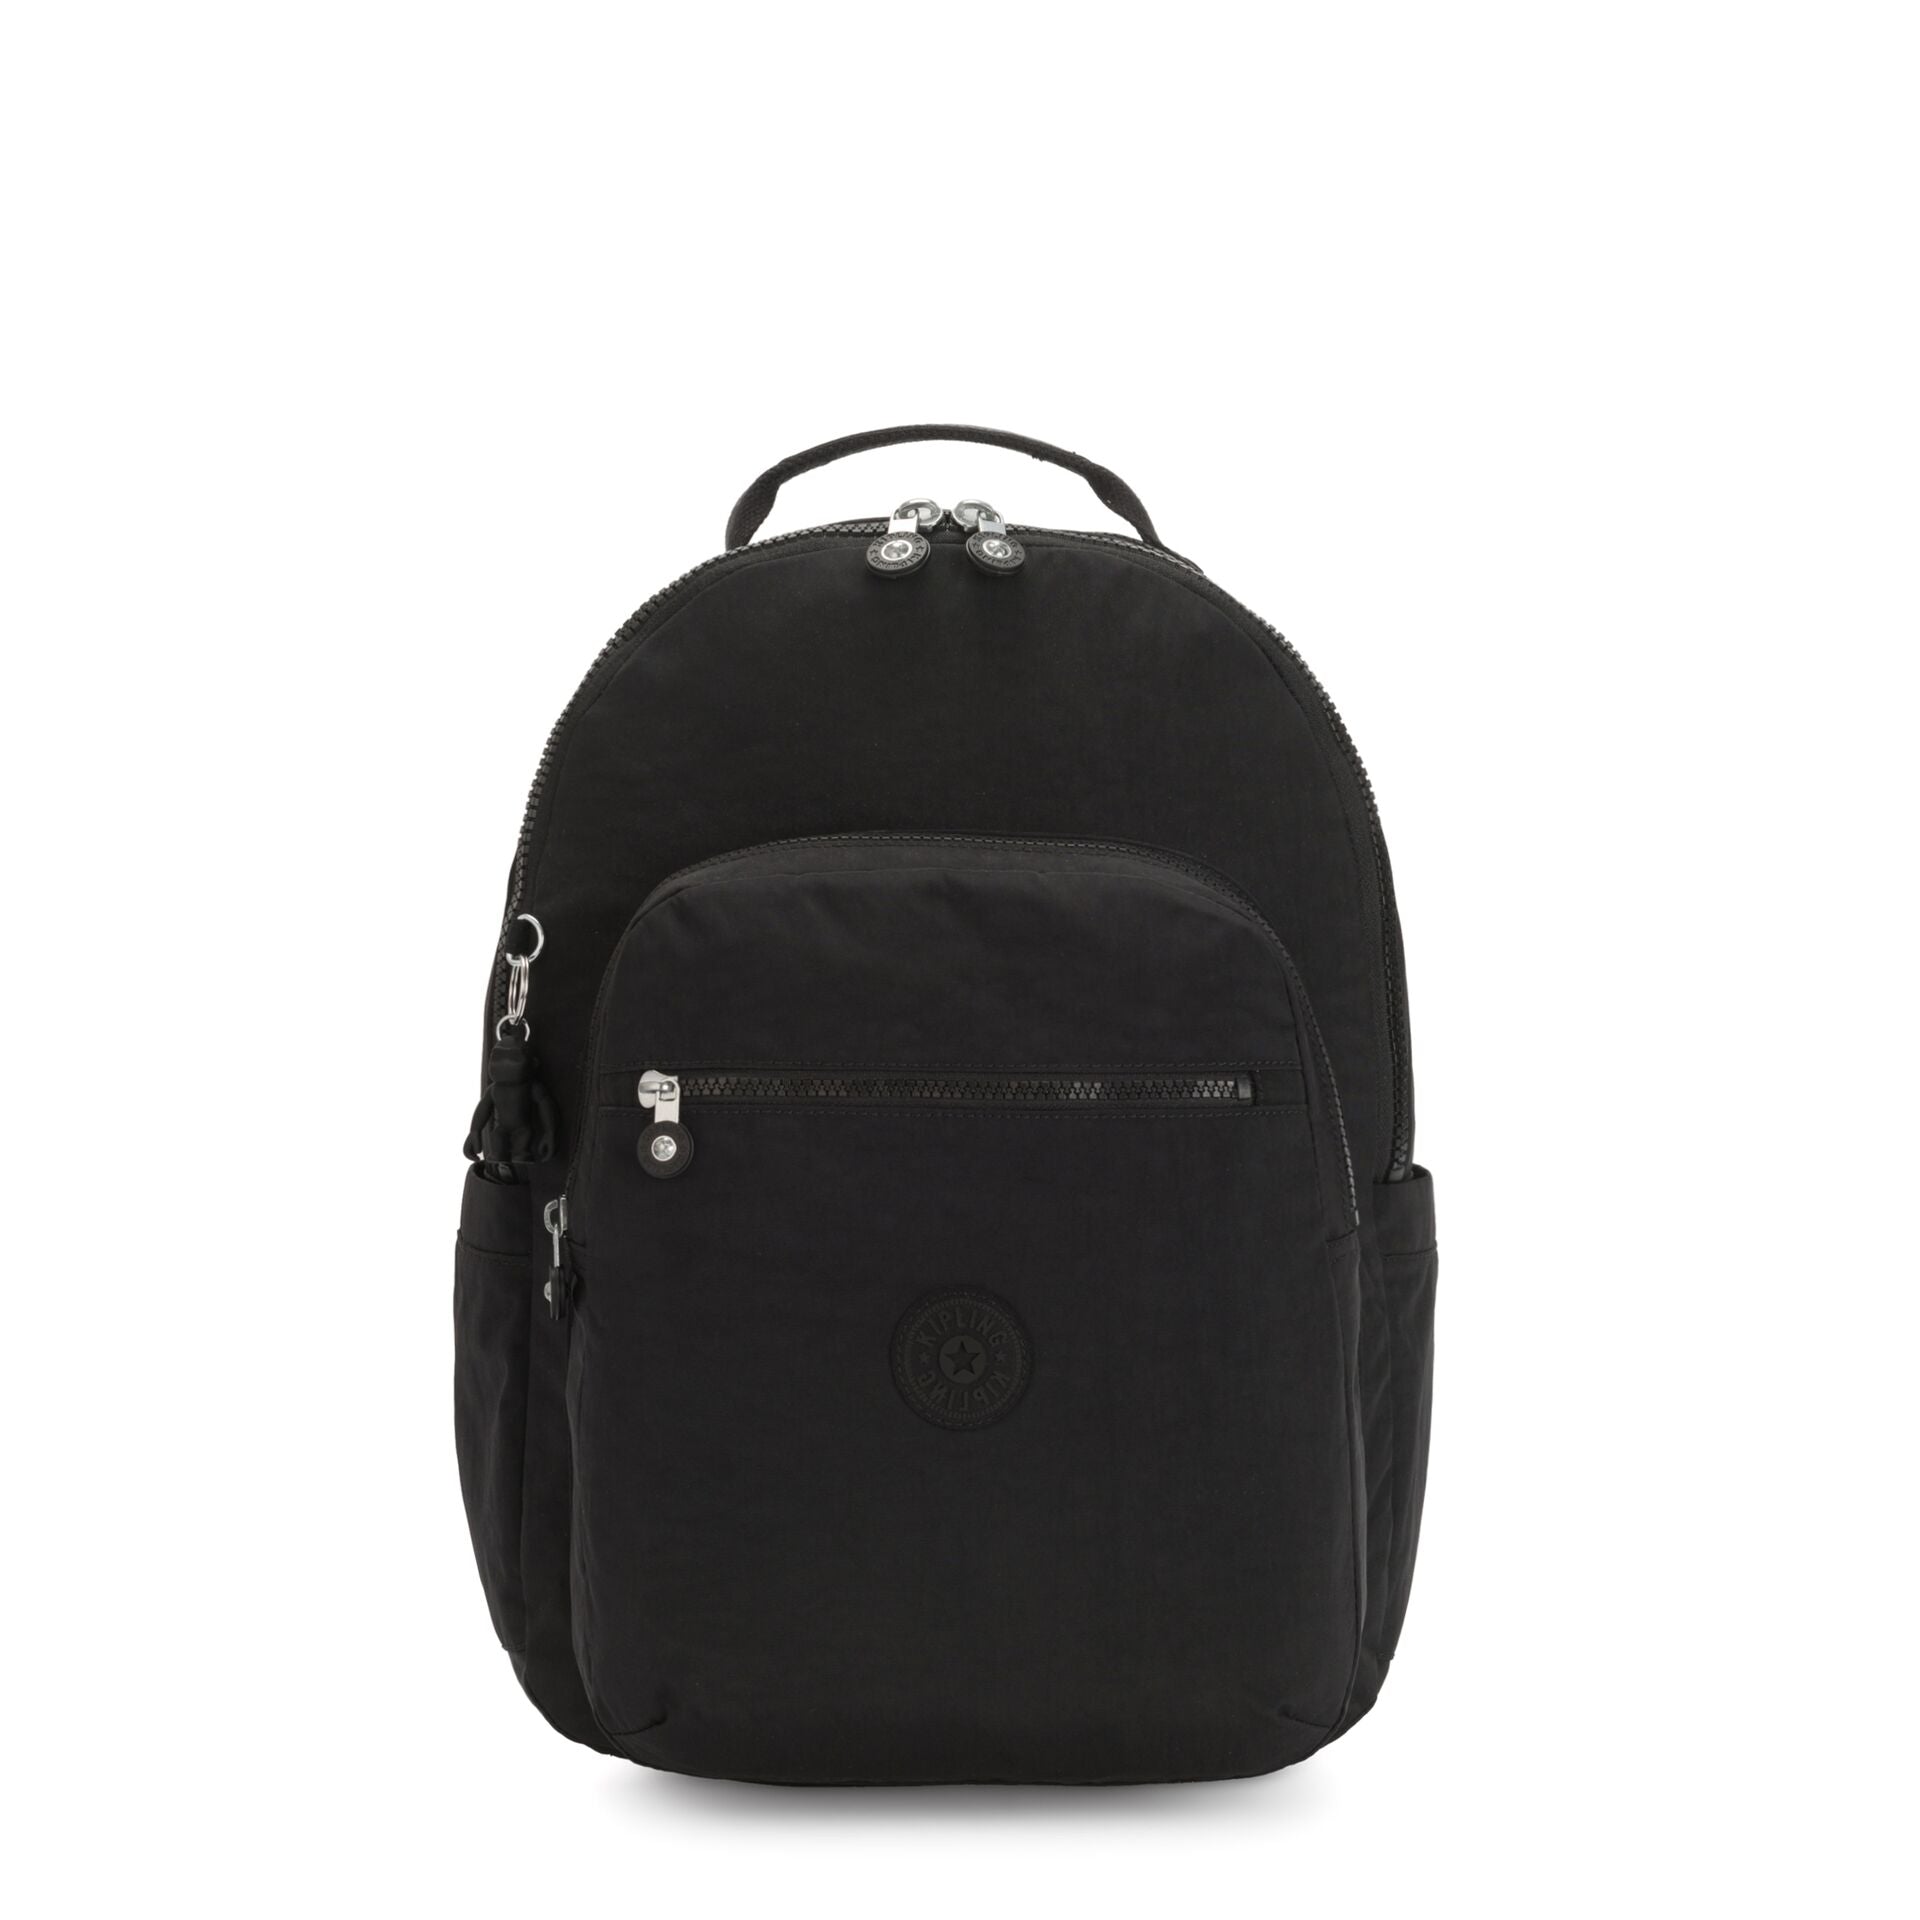 KIPLING-SEOUL-Large Backpack-Black Noir-I5210-P39